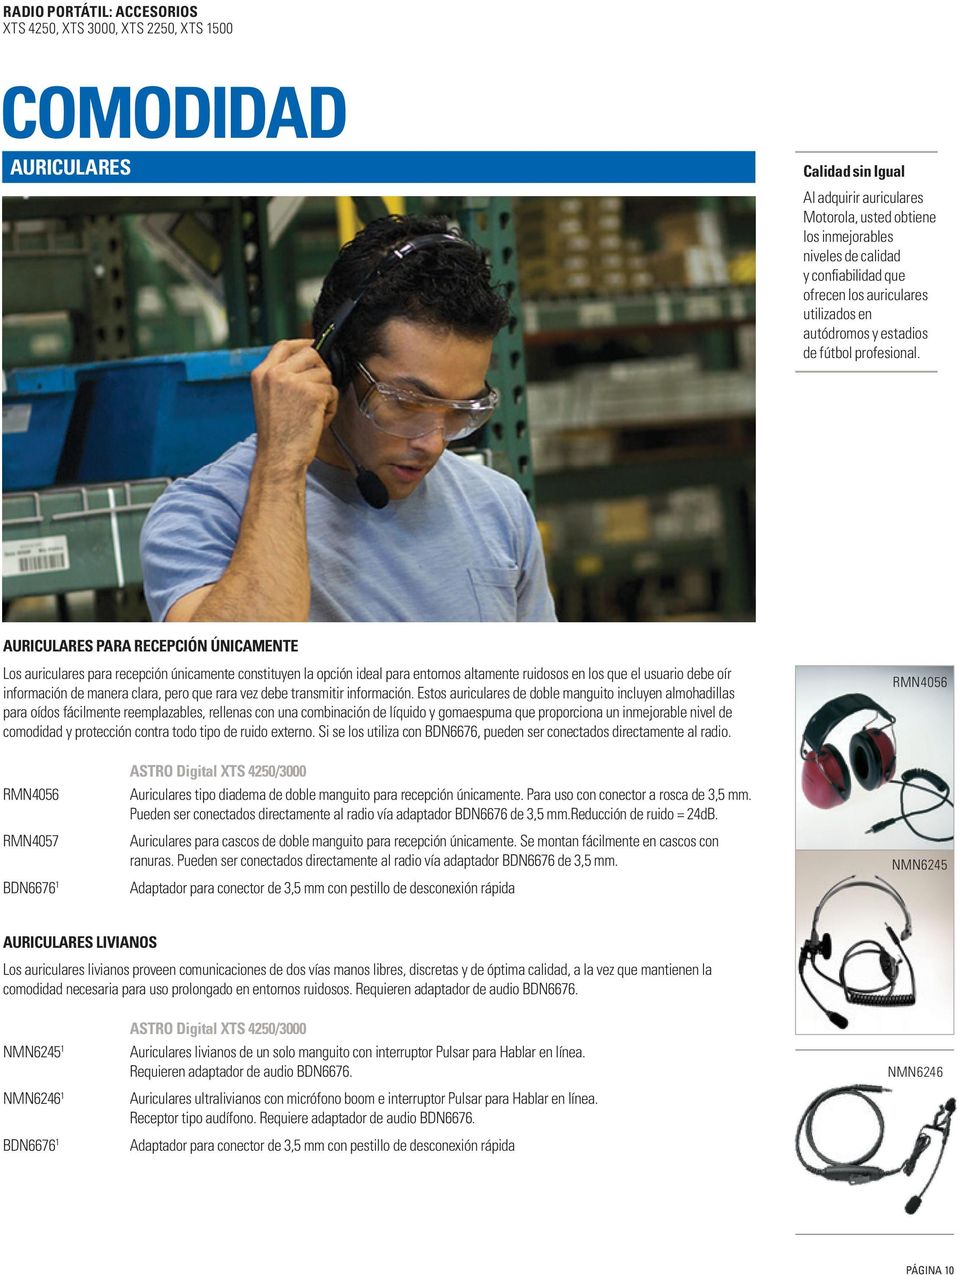 AURICULARES PARA RECEPCIÓN ÚNICAMENTE Los auriculares para recepción únicamente constituyen la opción ideal para entornos altamente ruidosos en los que el usuario debe oír información de manera